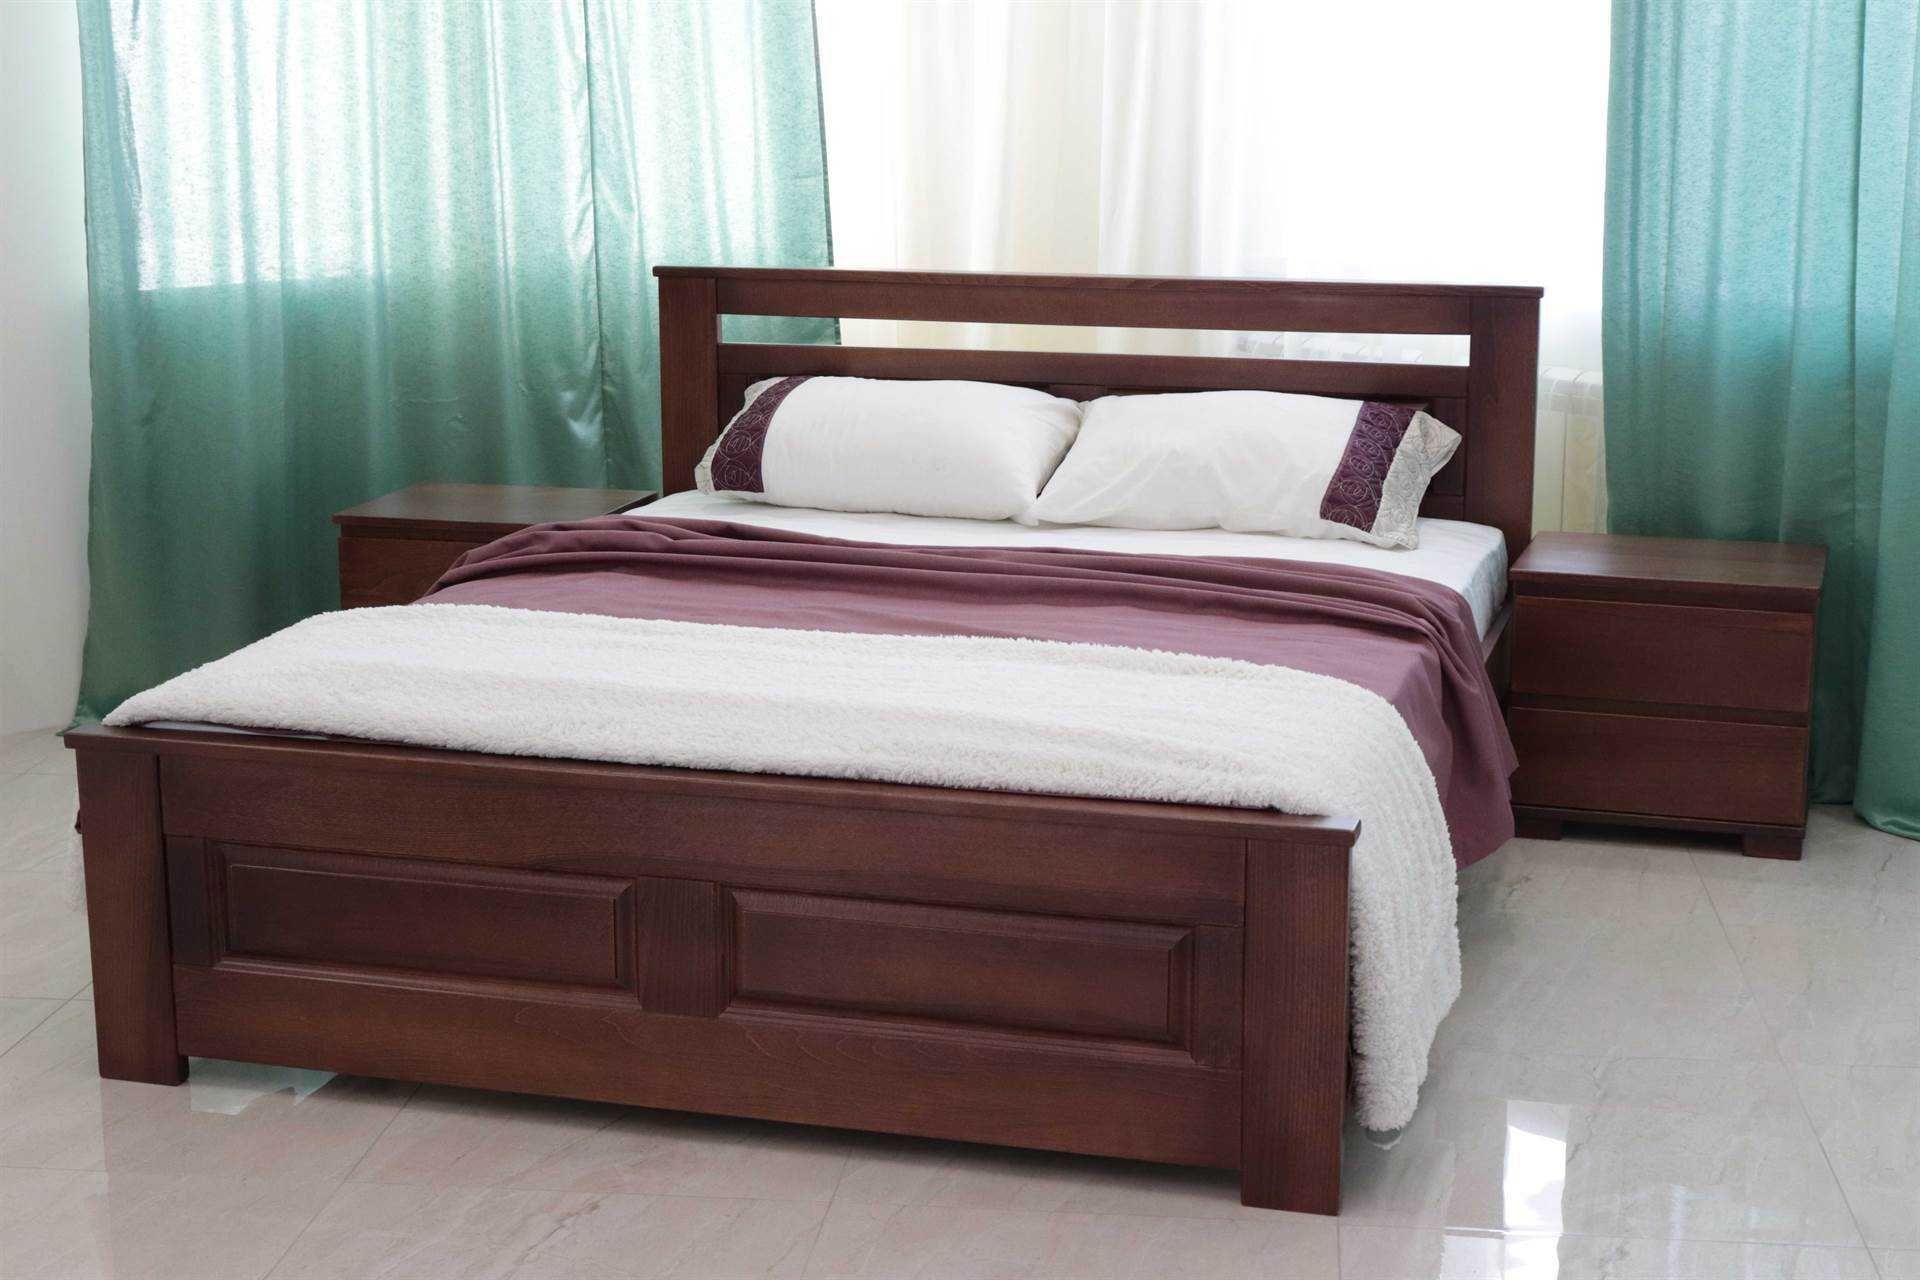 Ліжка дерев'яні виготовлені з масиву бука